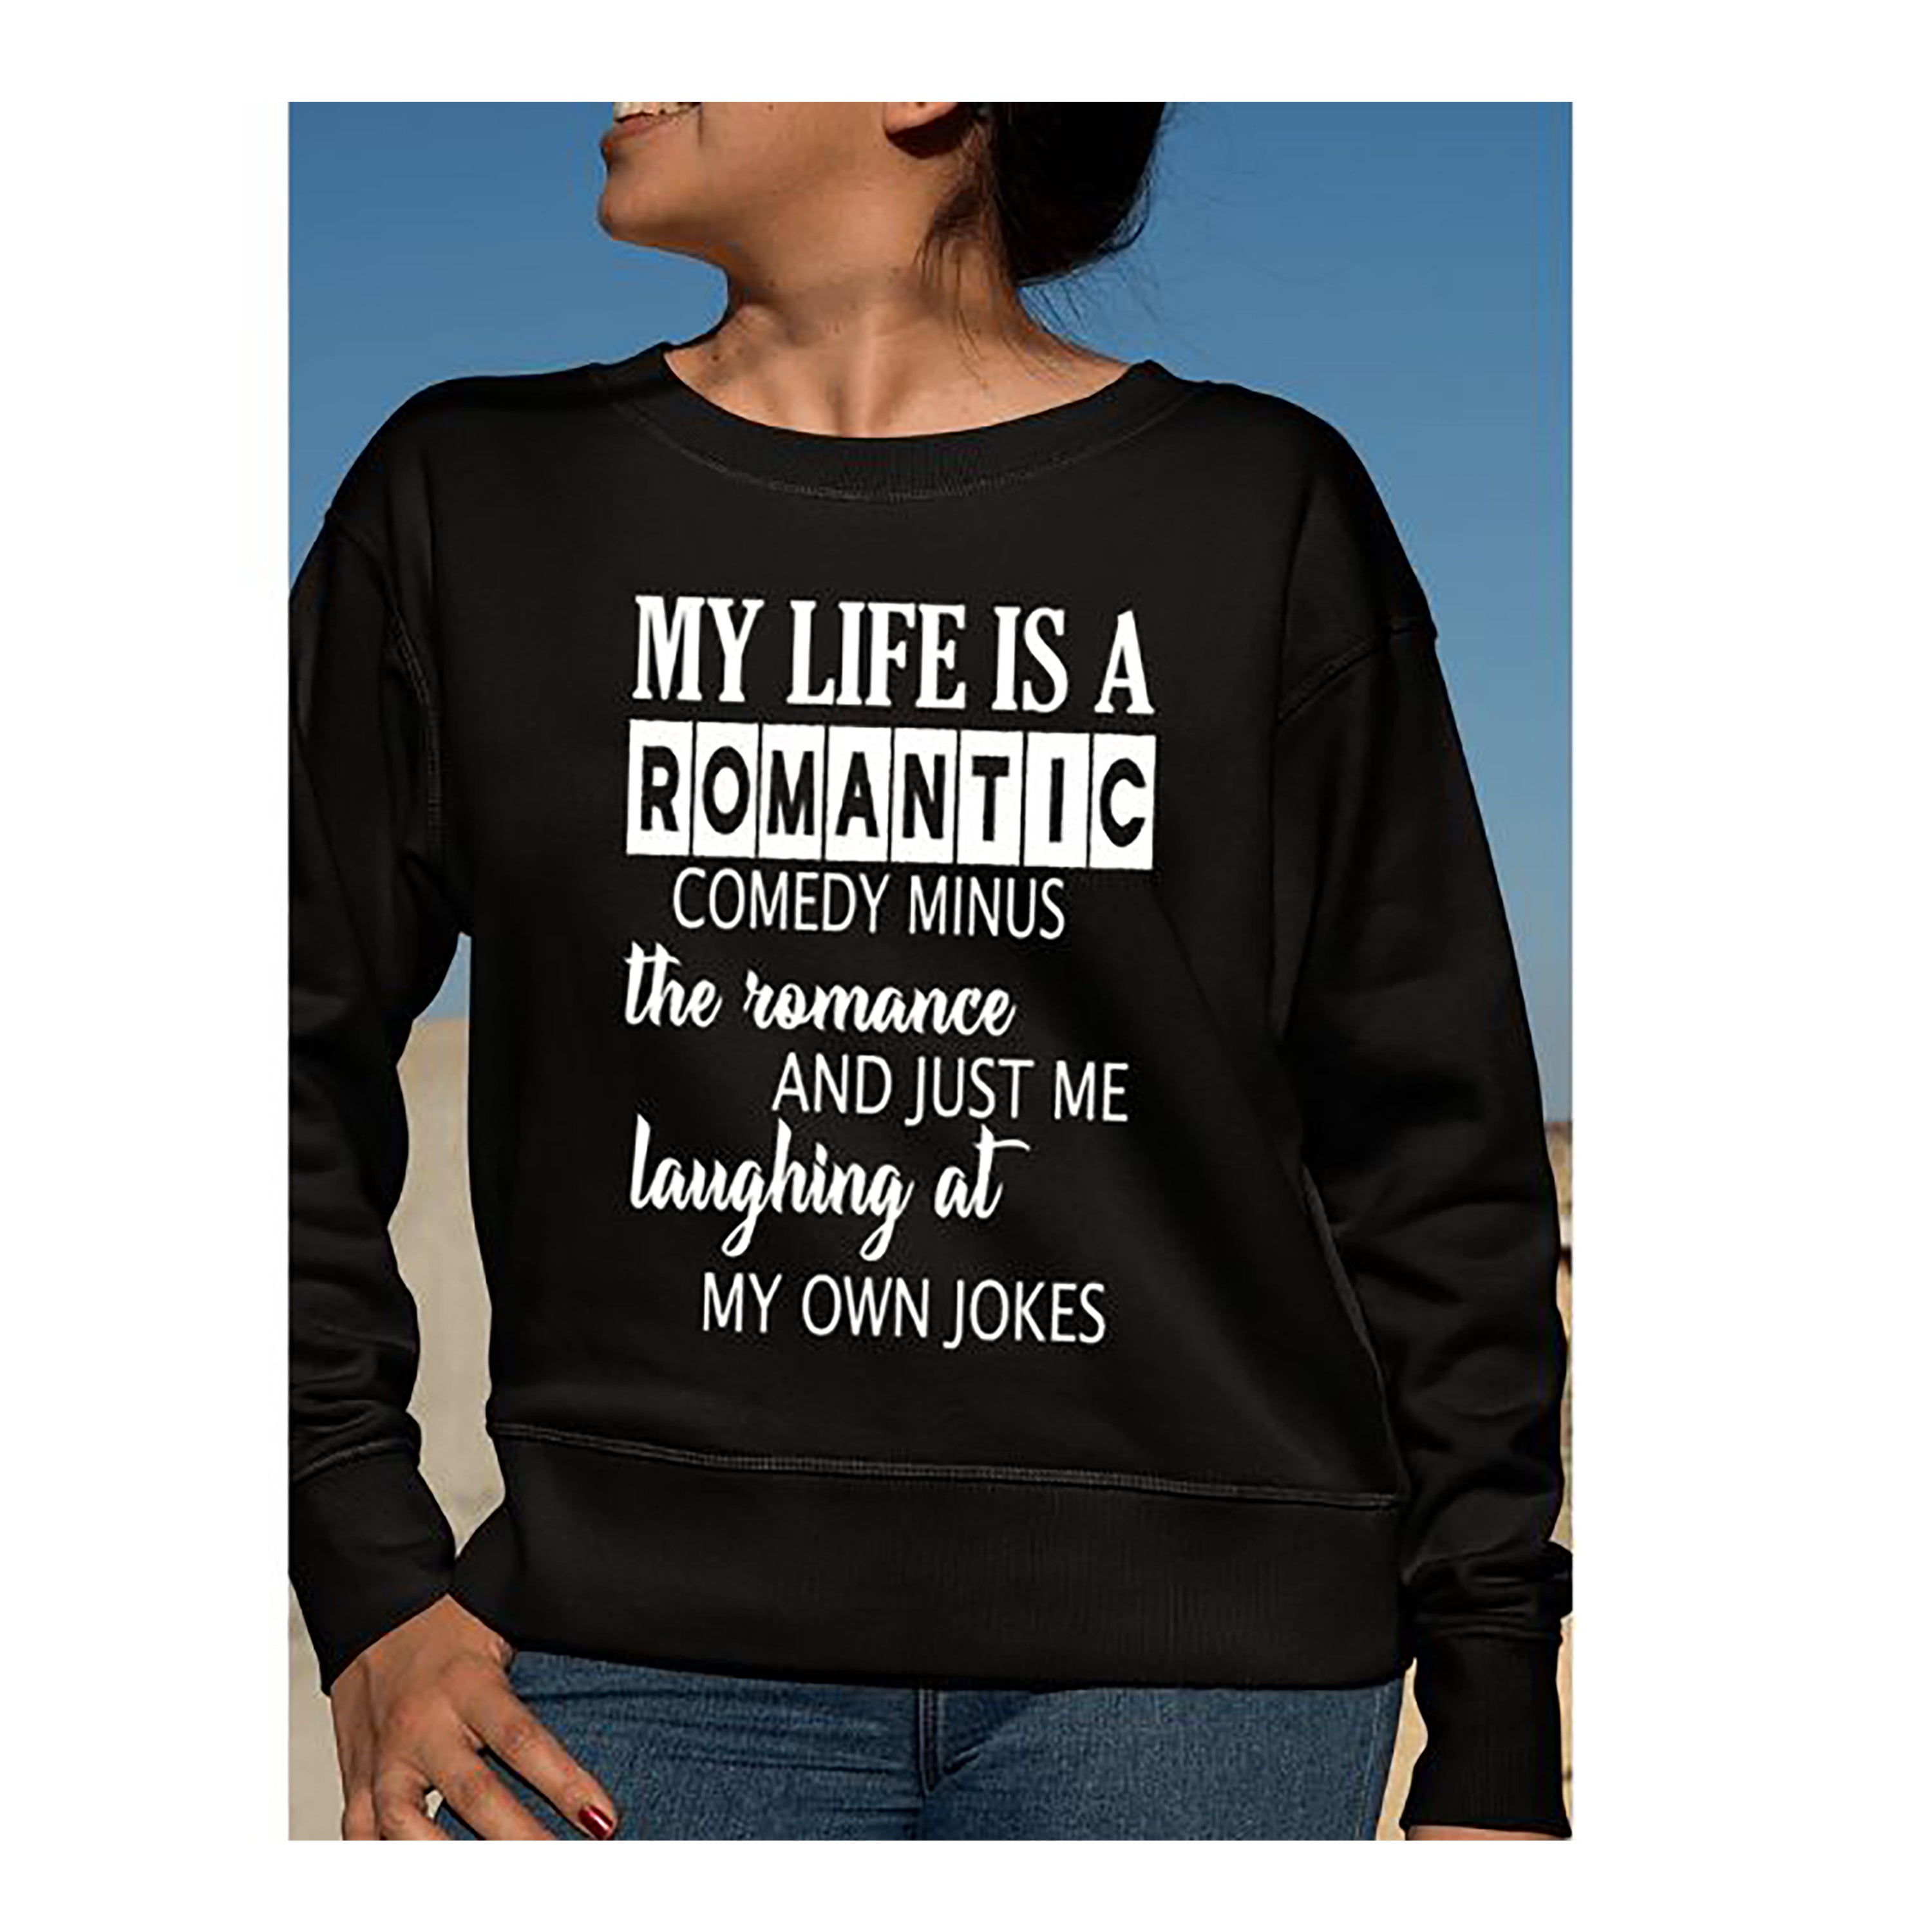 "MY LIFE IS ROMANTIC" Hoodie & Sweatshirt